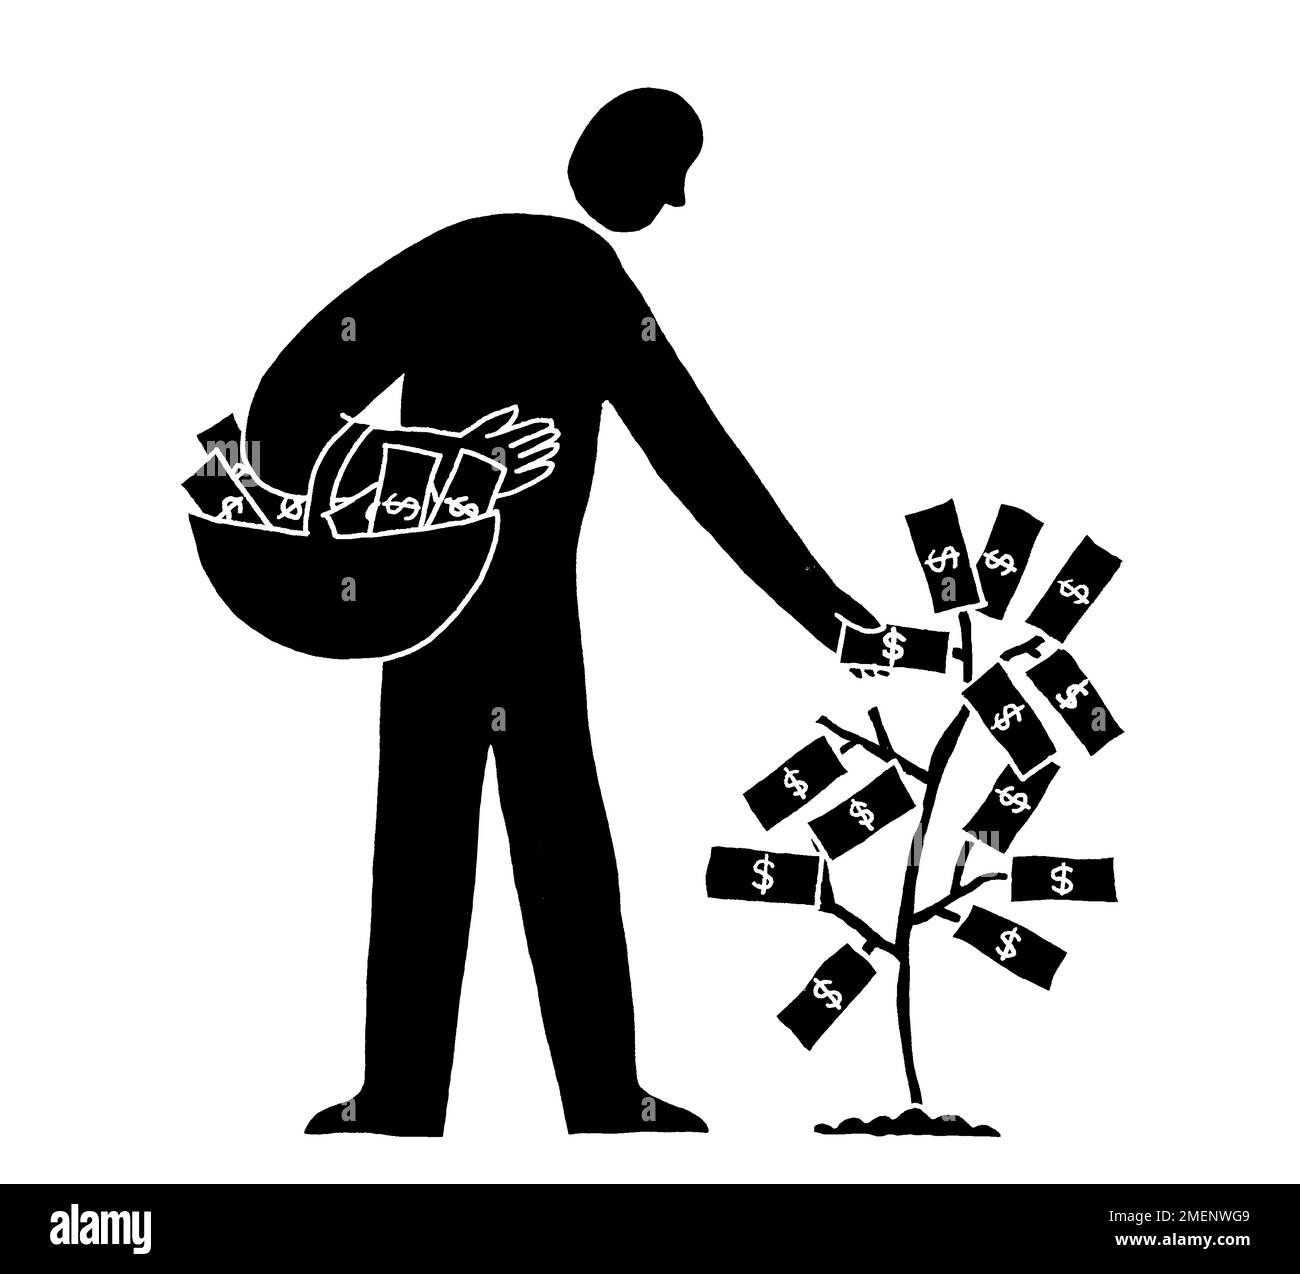 Illustration noire et blanche de l'argent poussant sur l'arbre avec un homme cueillant les notes et les plaçant dans un panier Banque D'Images